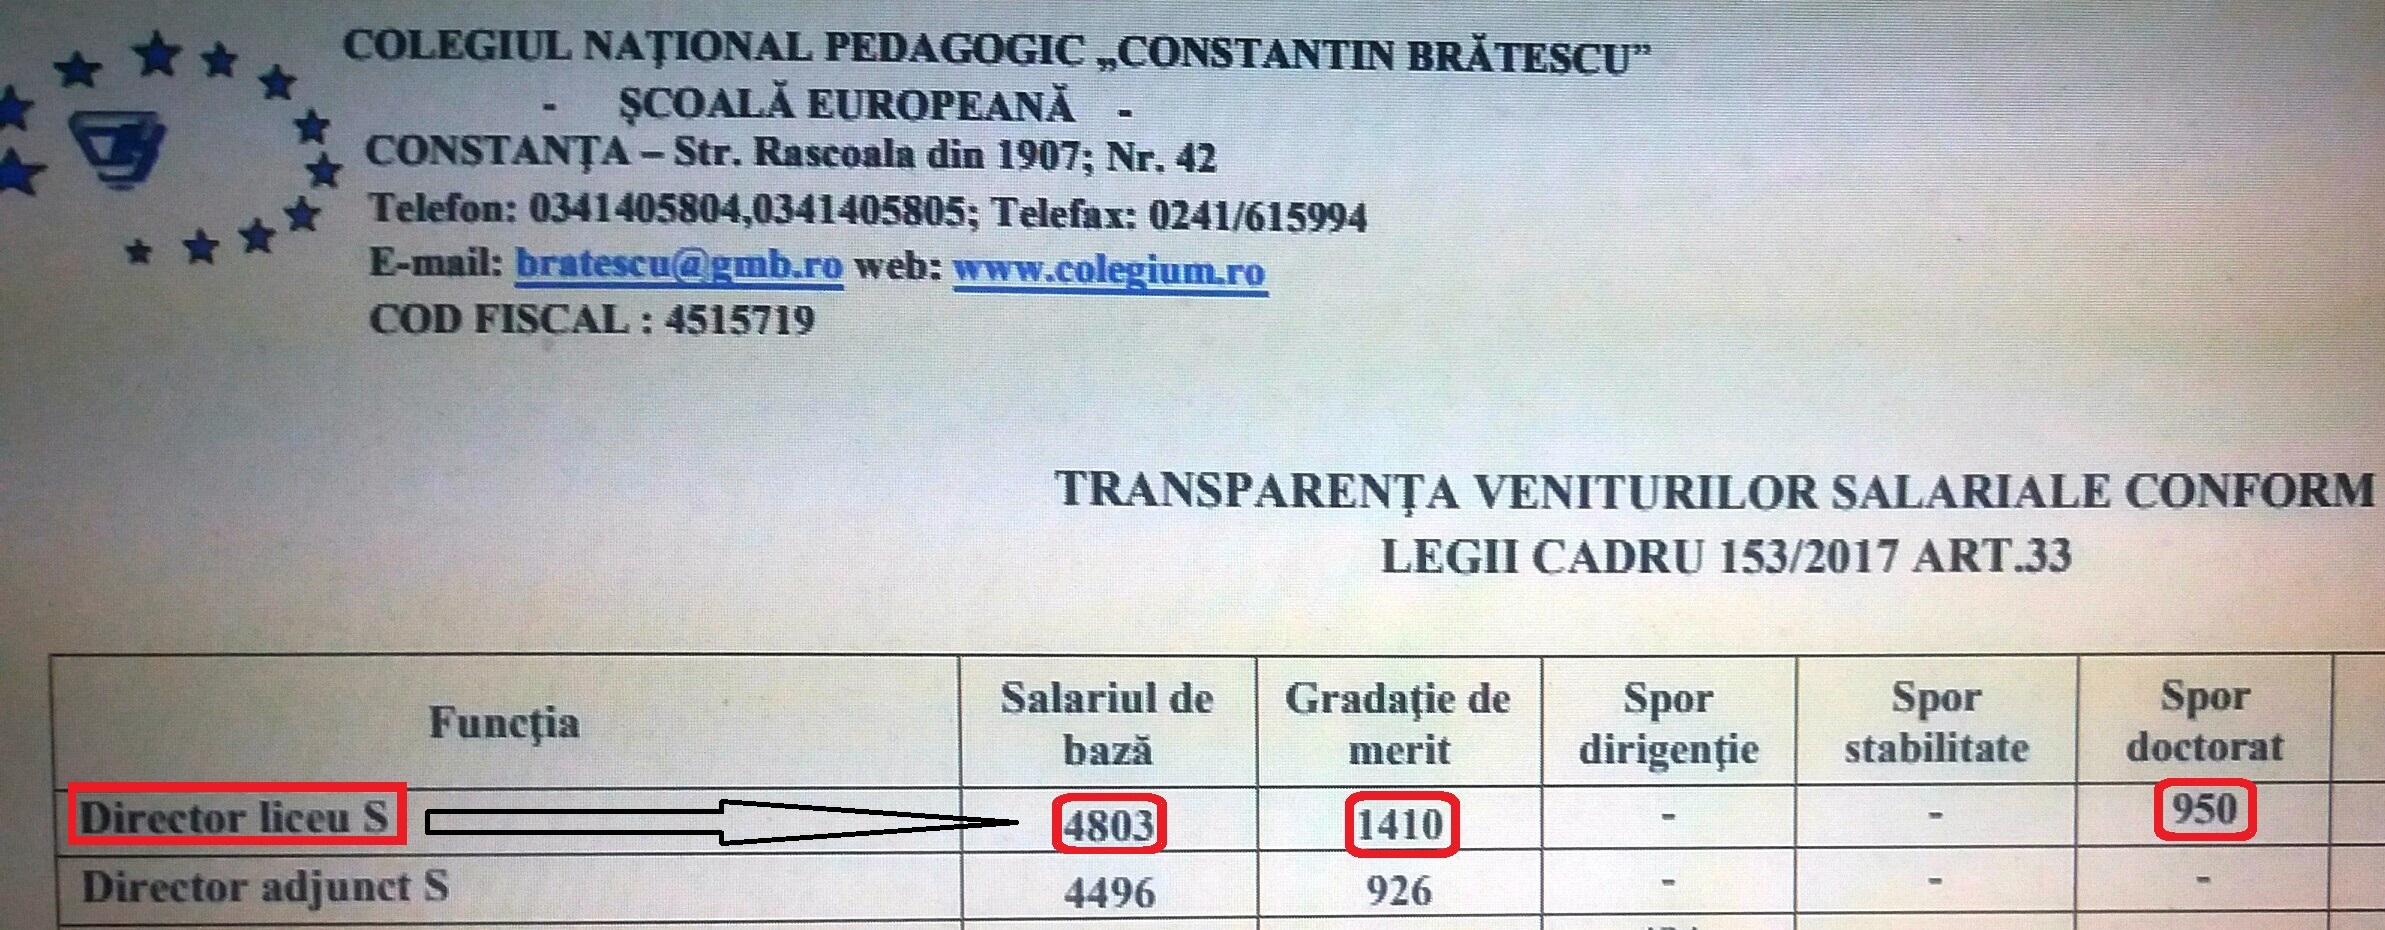 Anamaria Ciobotaru (agramată) - 4.803 lei (salariul de bază) + 1.410 lei (gradația de merit) + 950 lei (spor de doctiorat) = 7.163 lei/ lună.